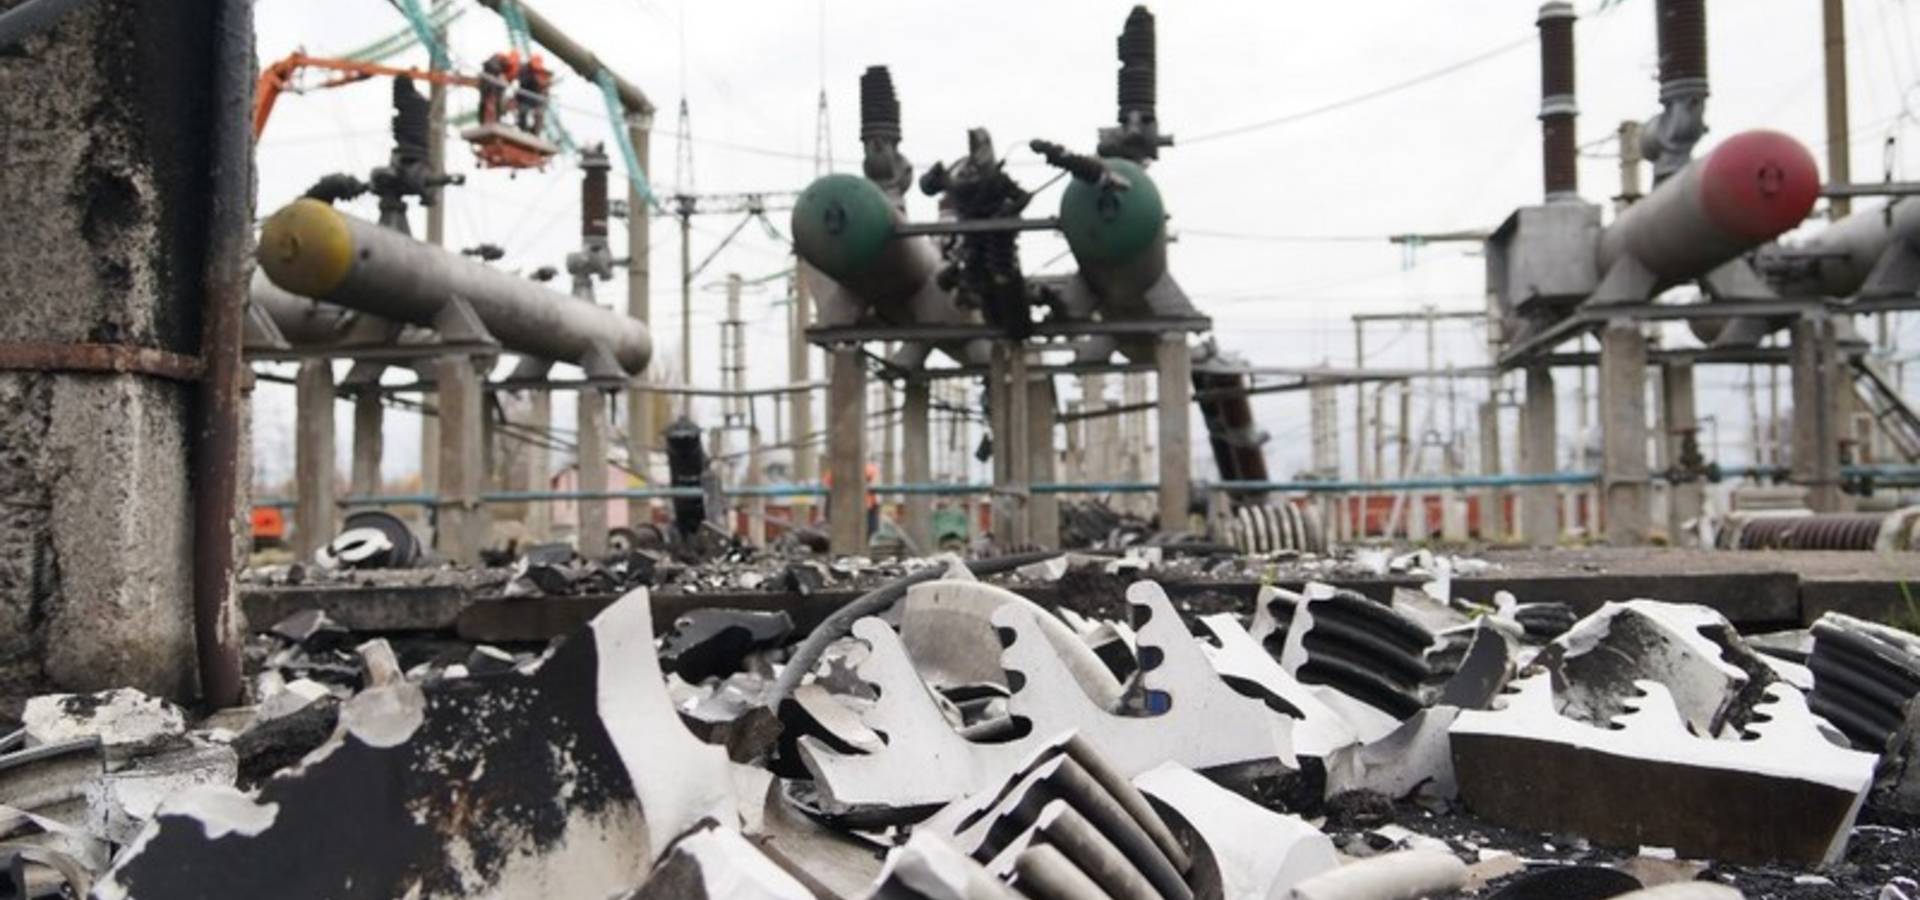 Ситуація в енергостистемі України залишається складною, - Укренерго